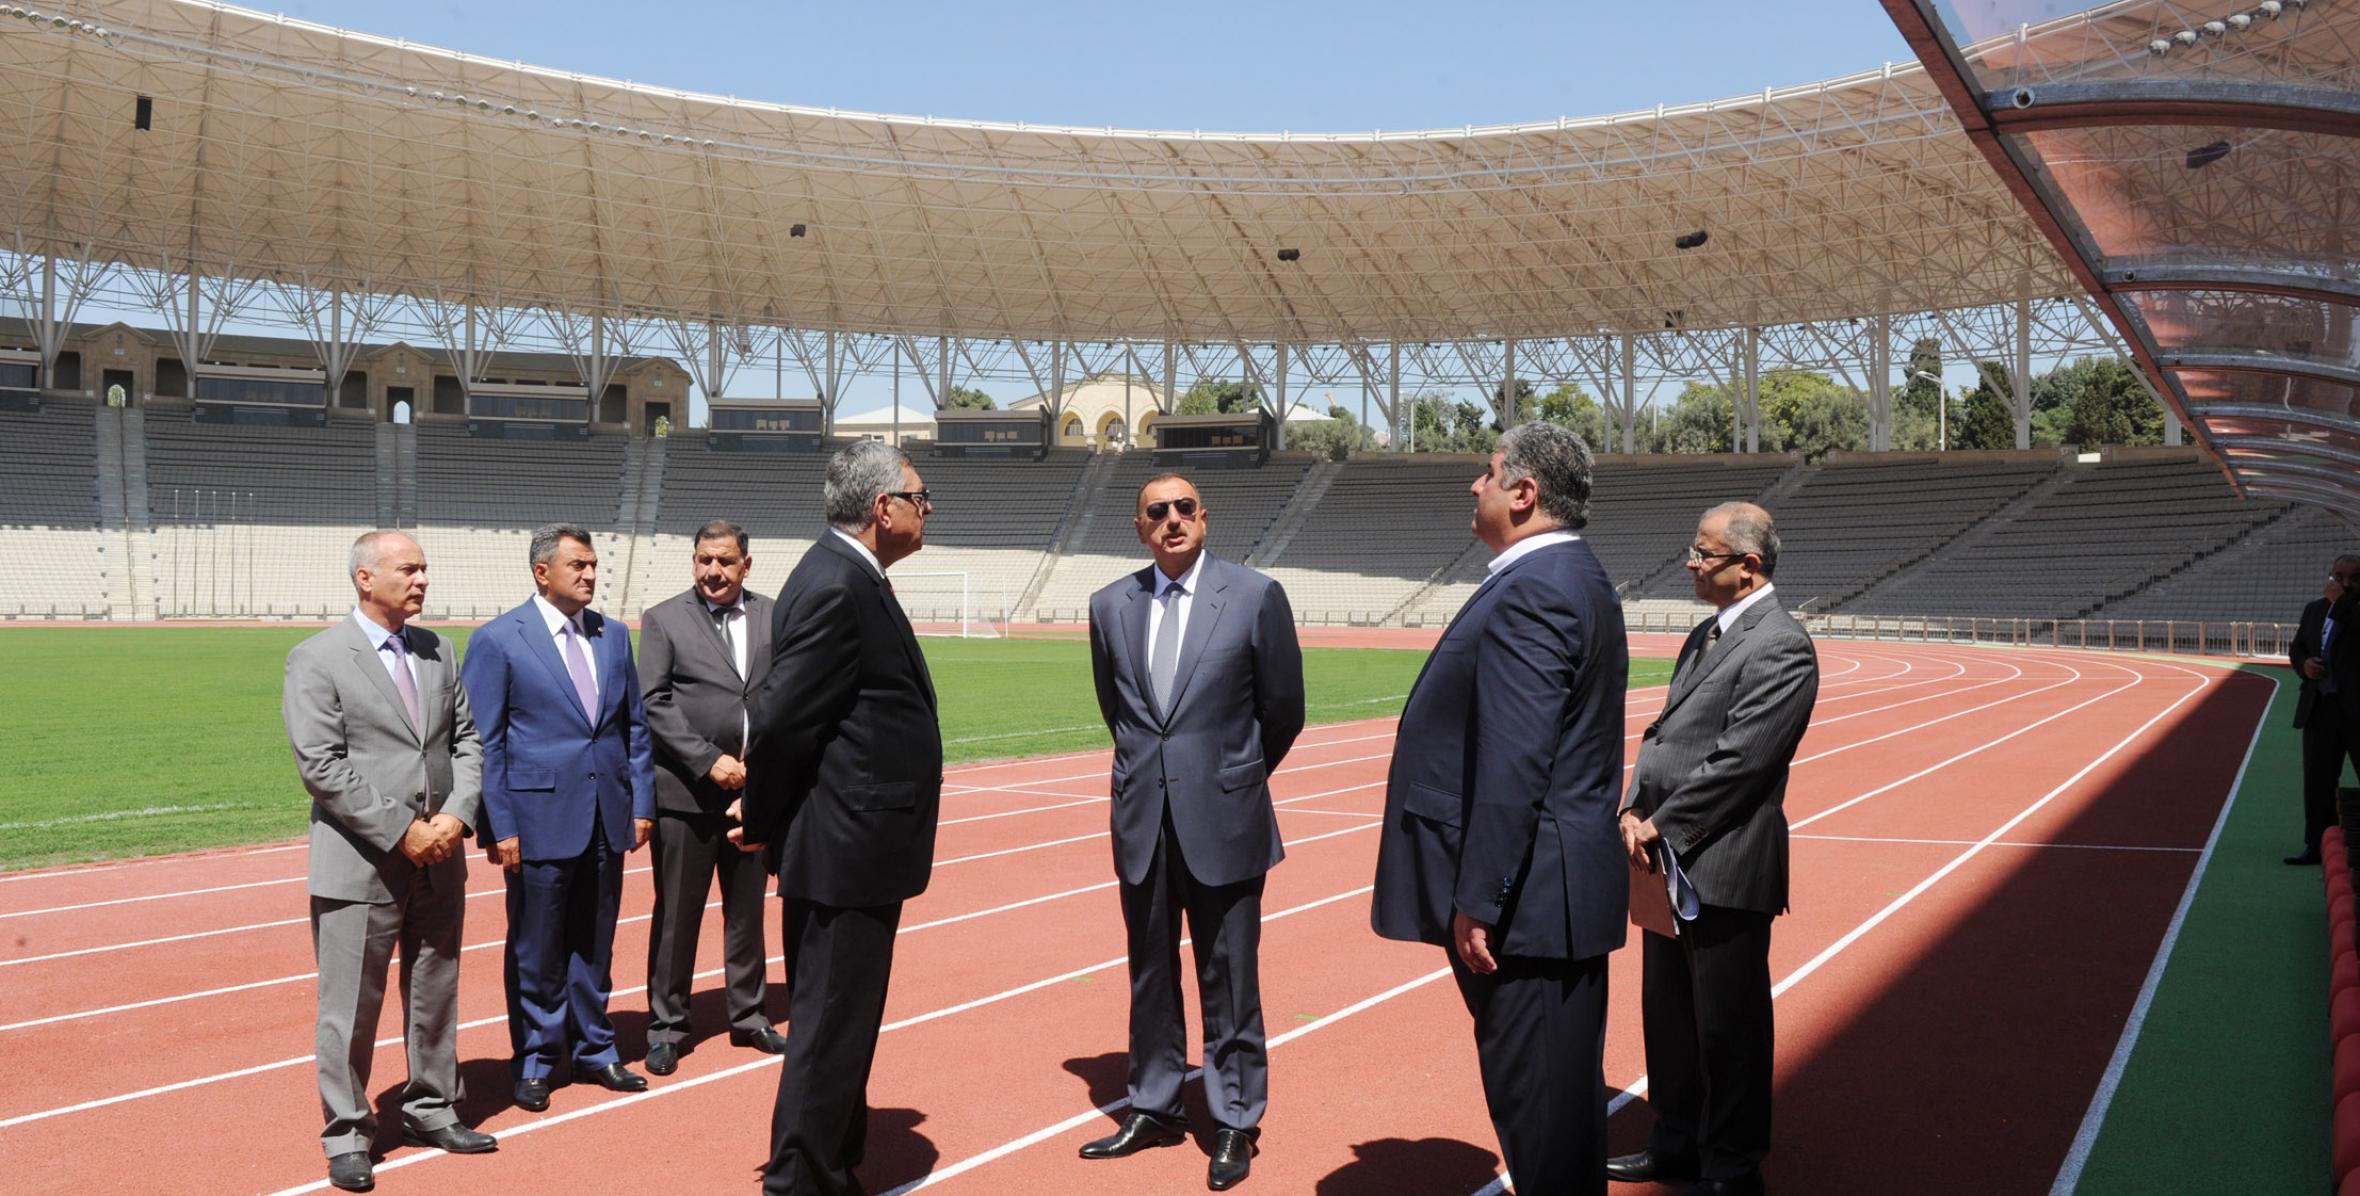 İlham Əliyev Tofiq Bəhramov adına Respublika Stadionunun əsaslı təmir və yenidənqurmadan sonra açılışında iştirak etmişdir